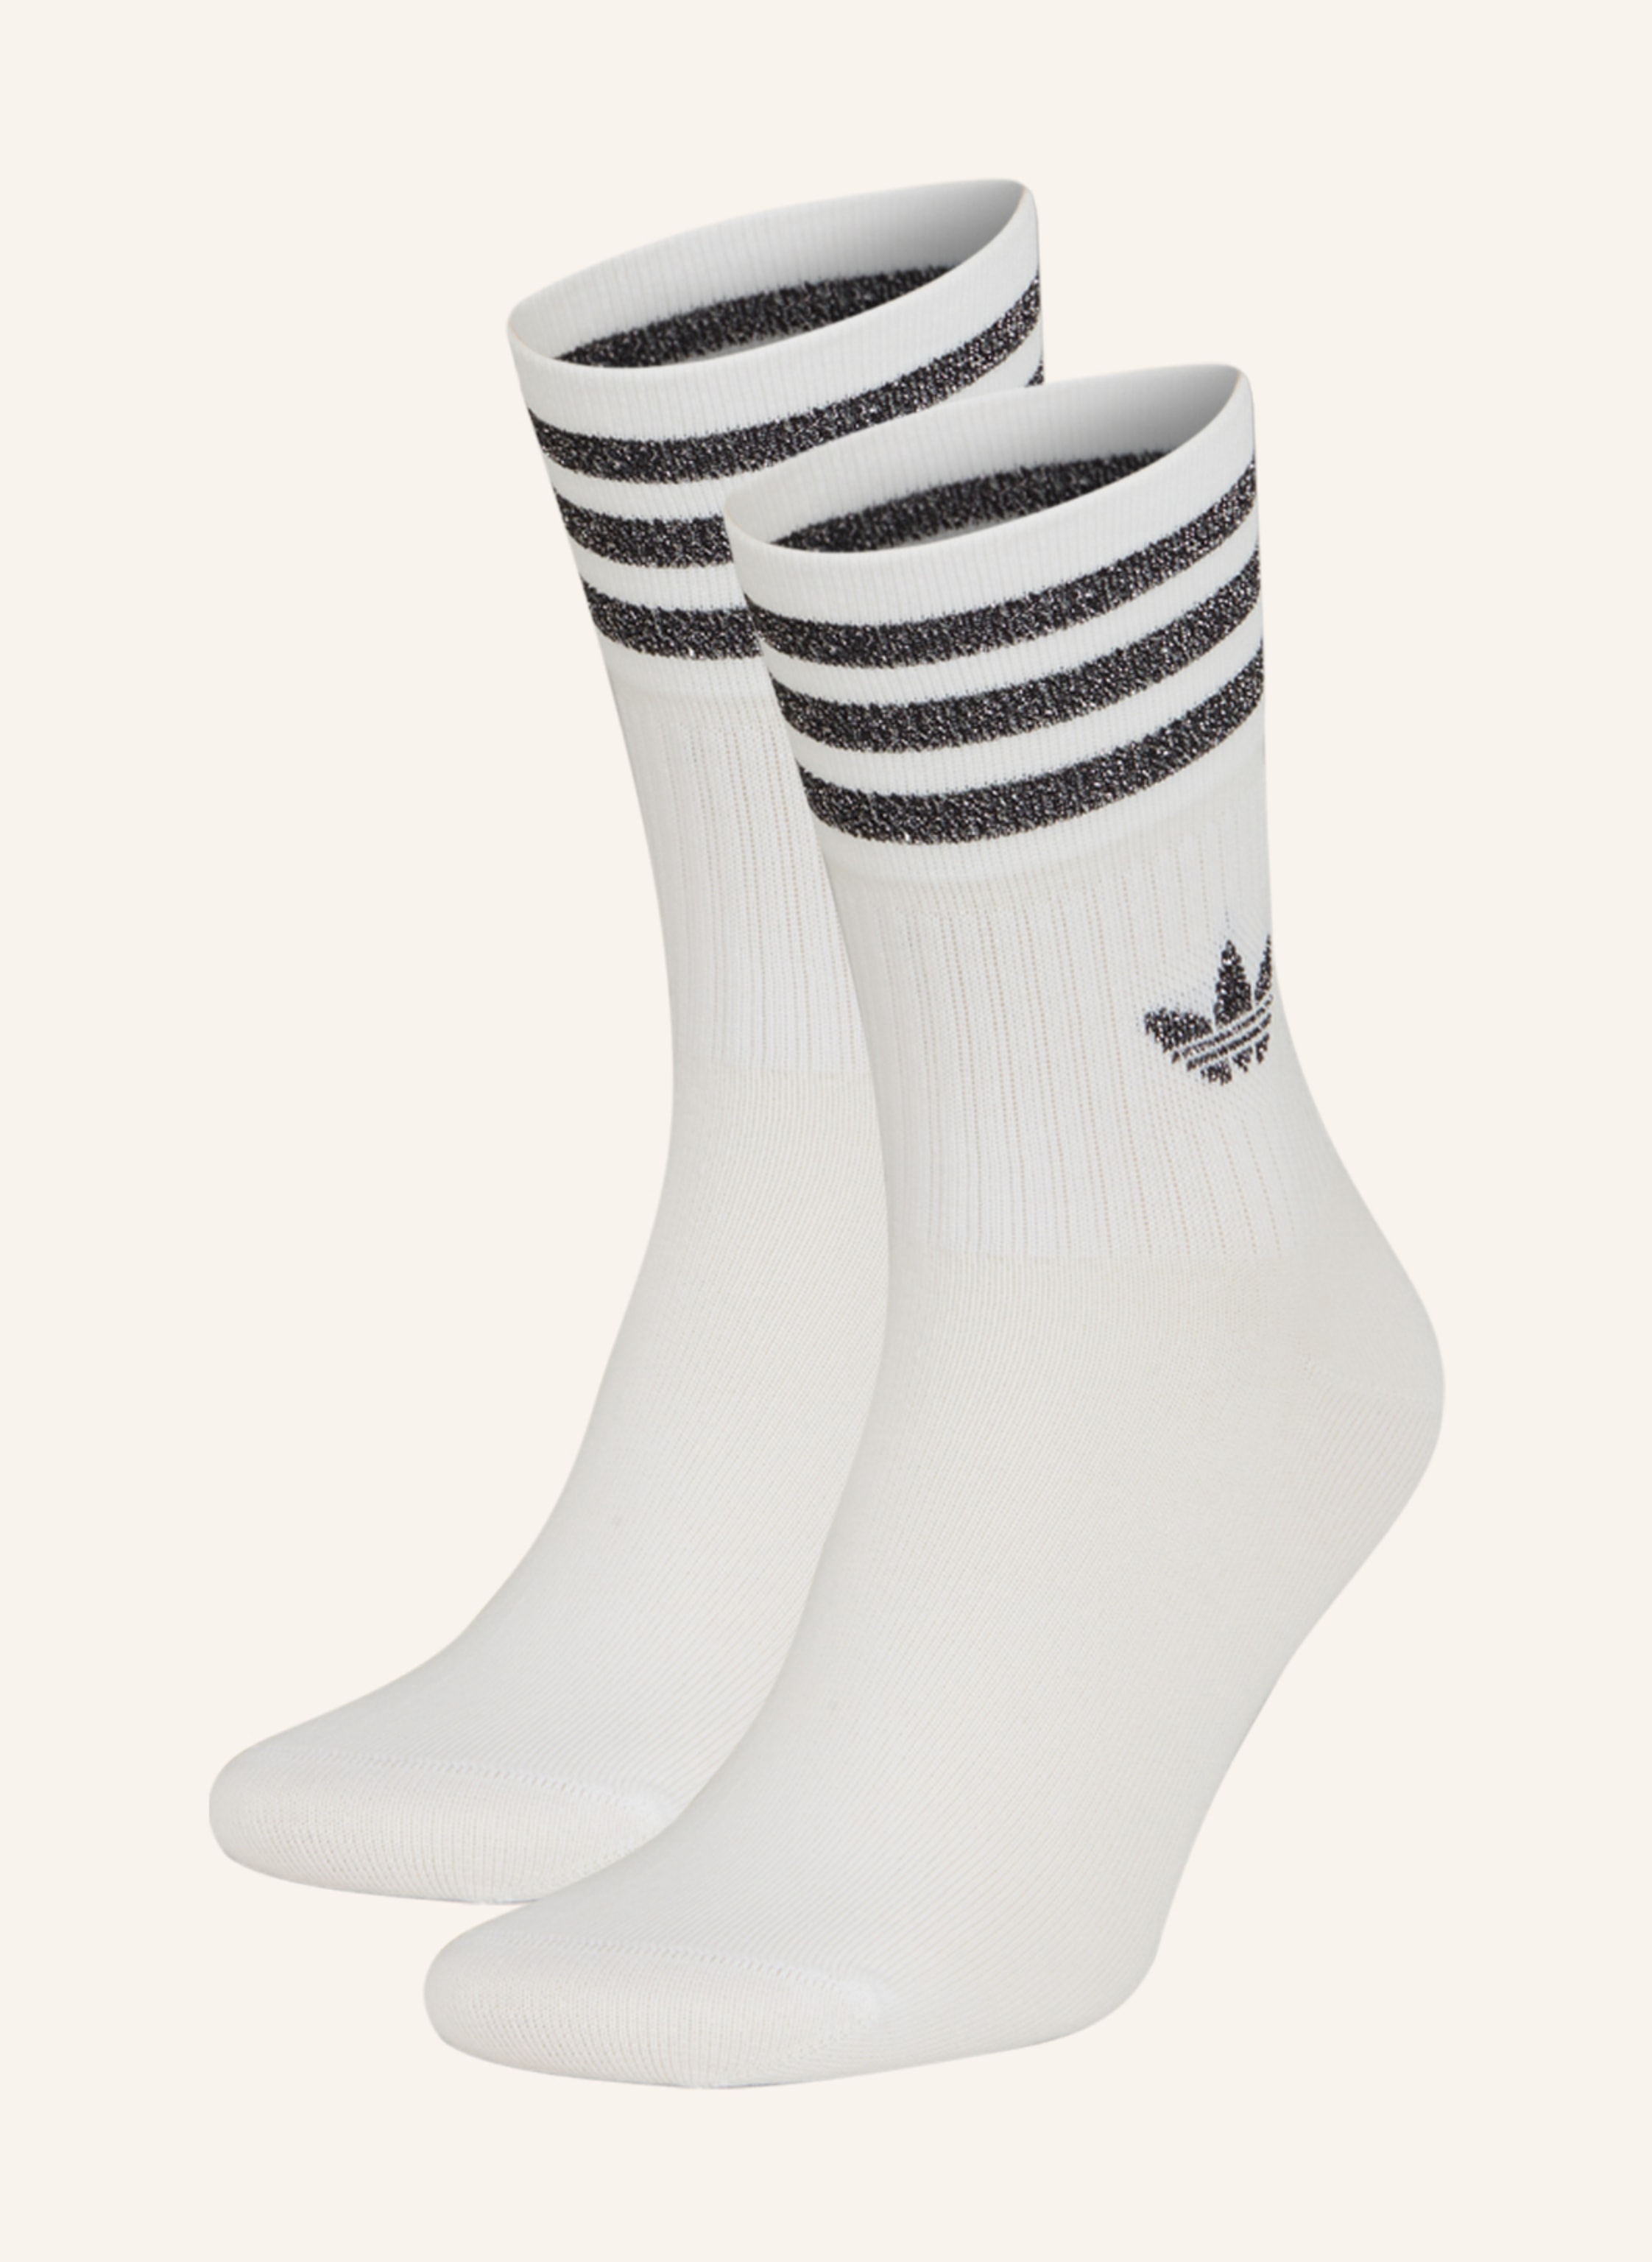 adidas Originals Socken white/gretwo/black MID-CUT CREW GLITTER 2er-Pack mit Glitzergarn in